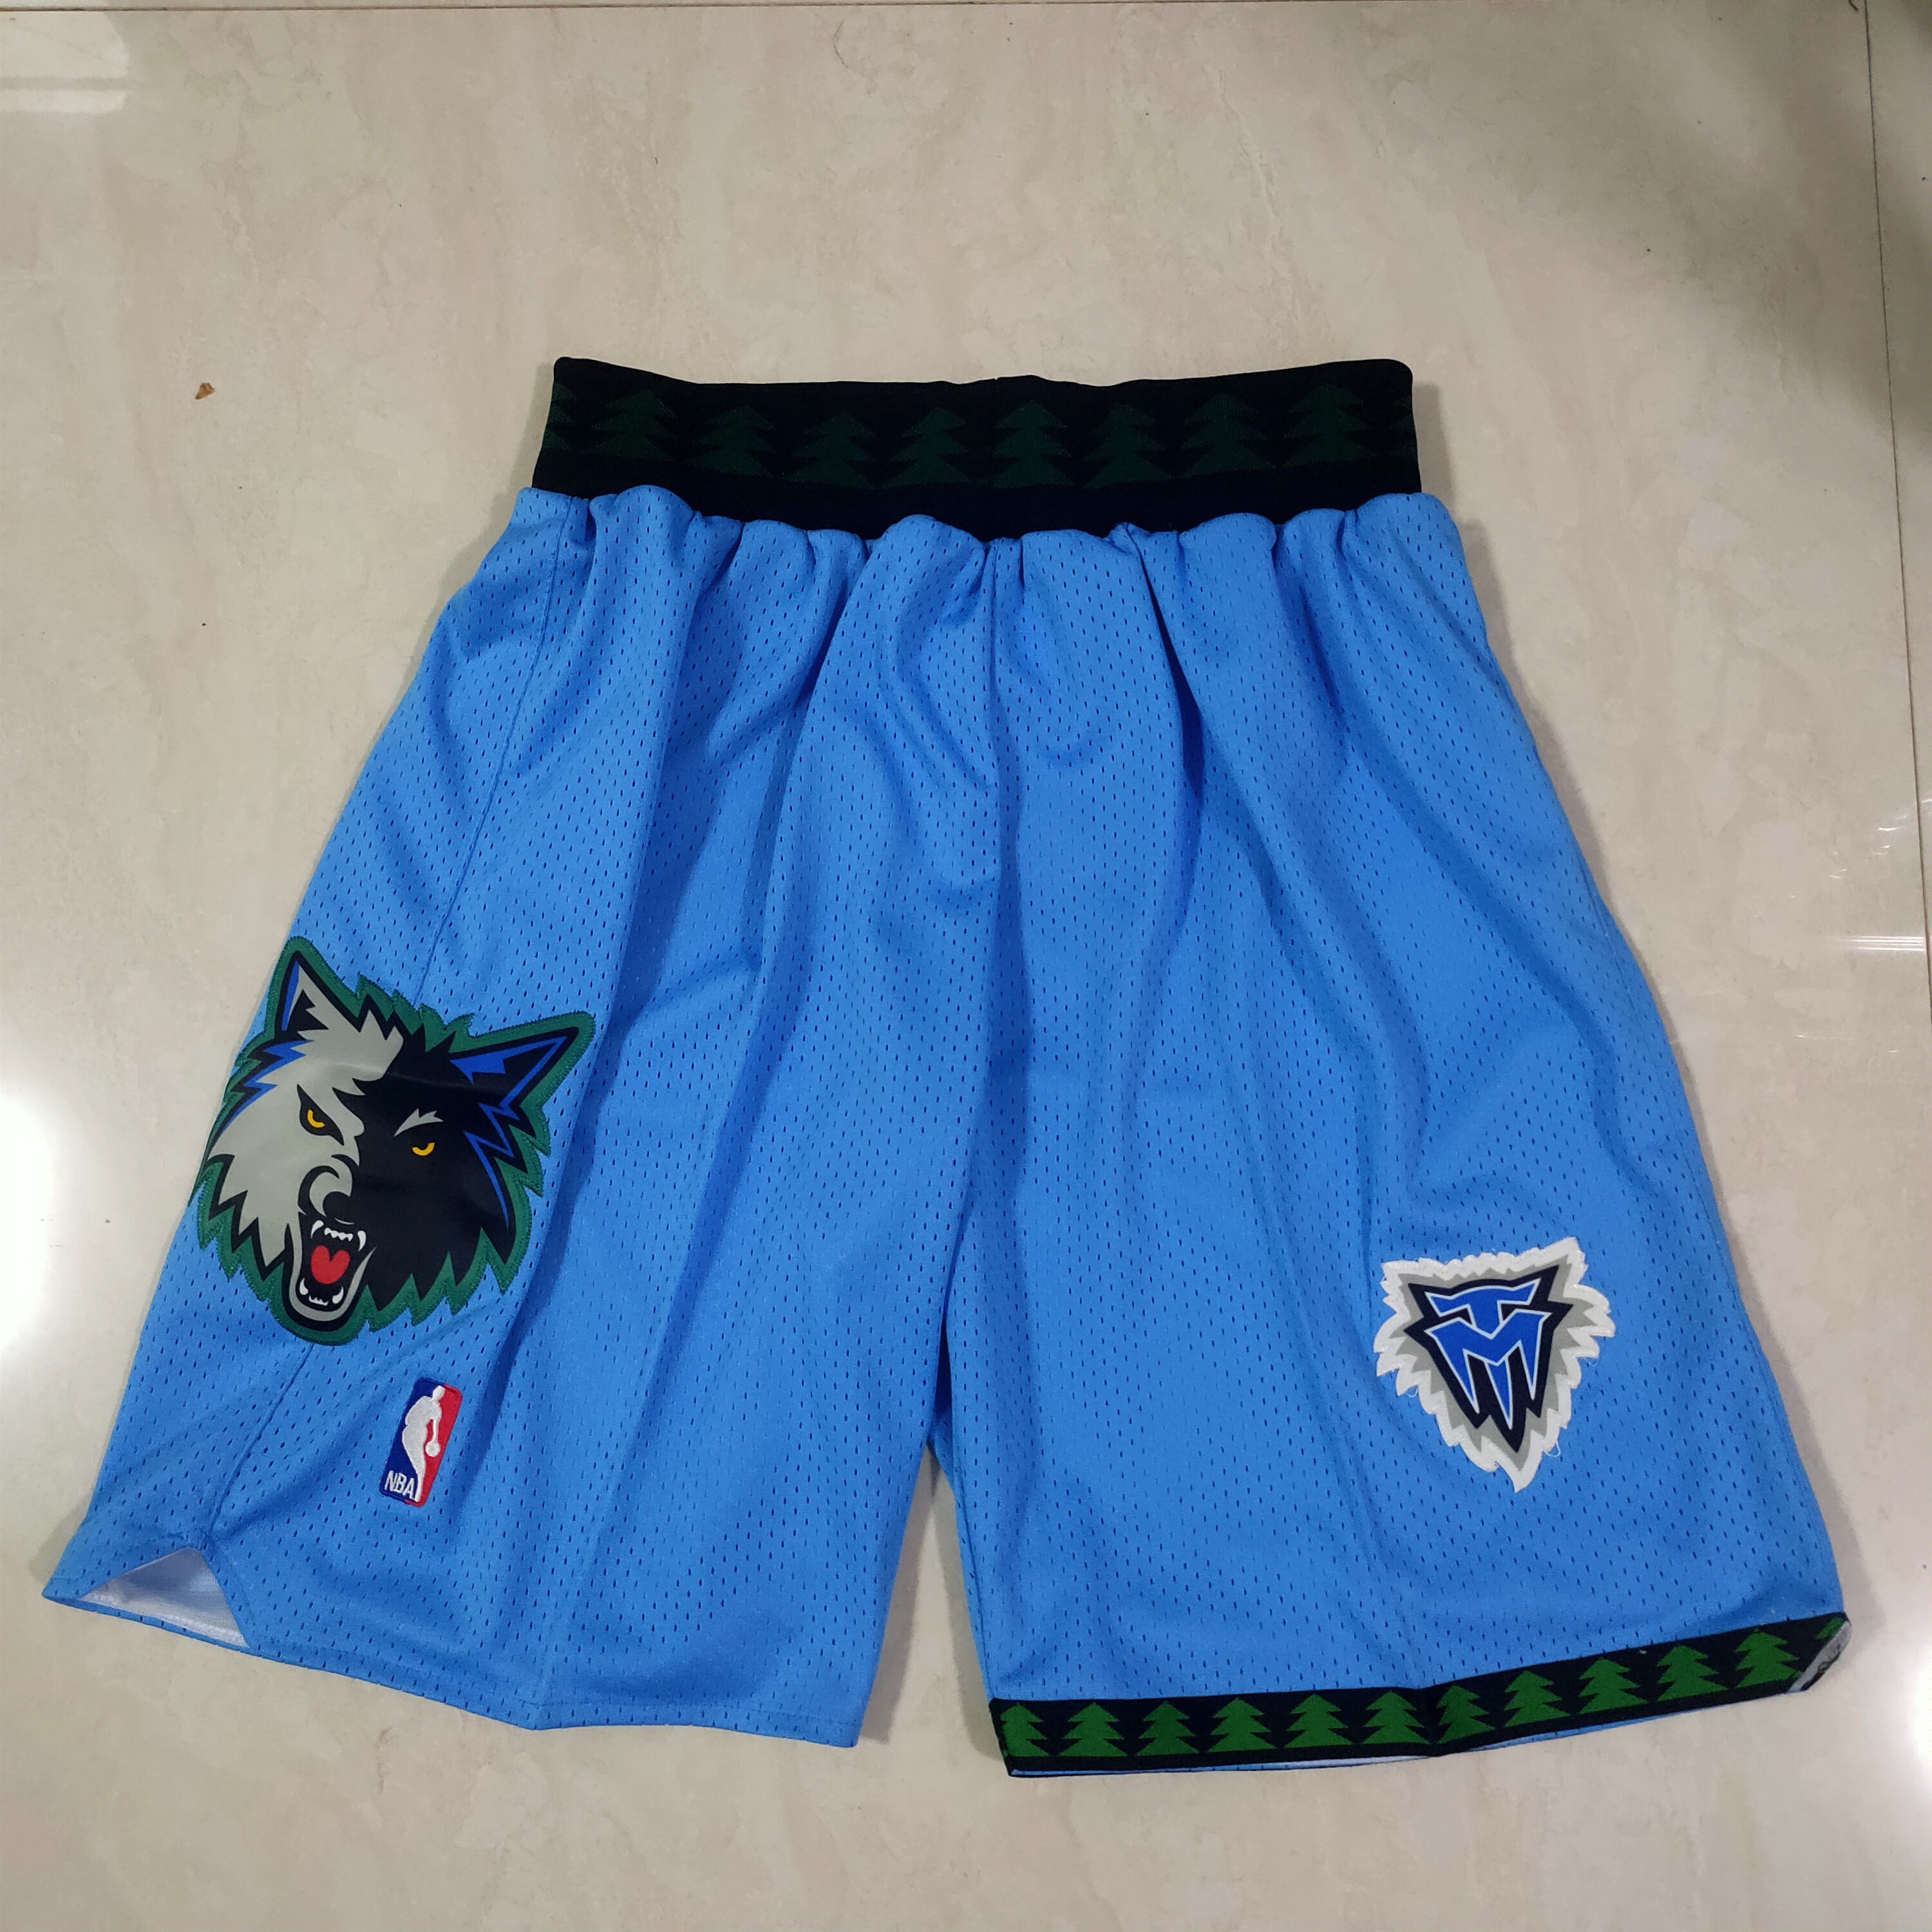 Men NBA Minnesota Timberwolves Blue Shorts 0416->memphis grizzlies->NBA Jersey